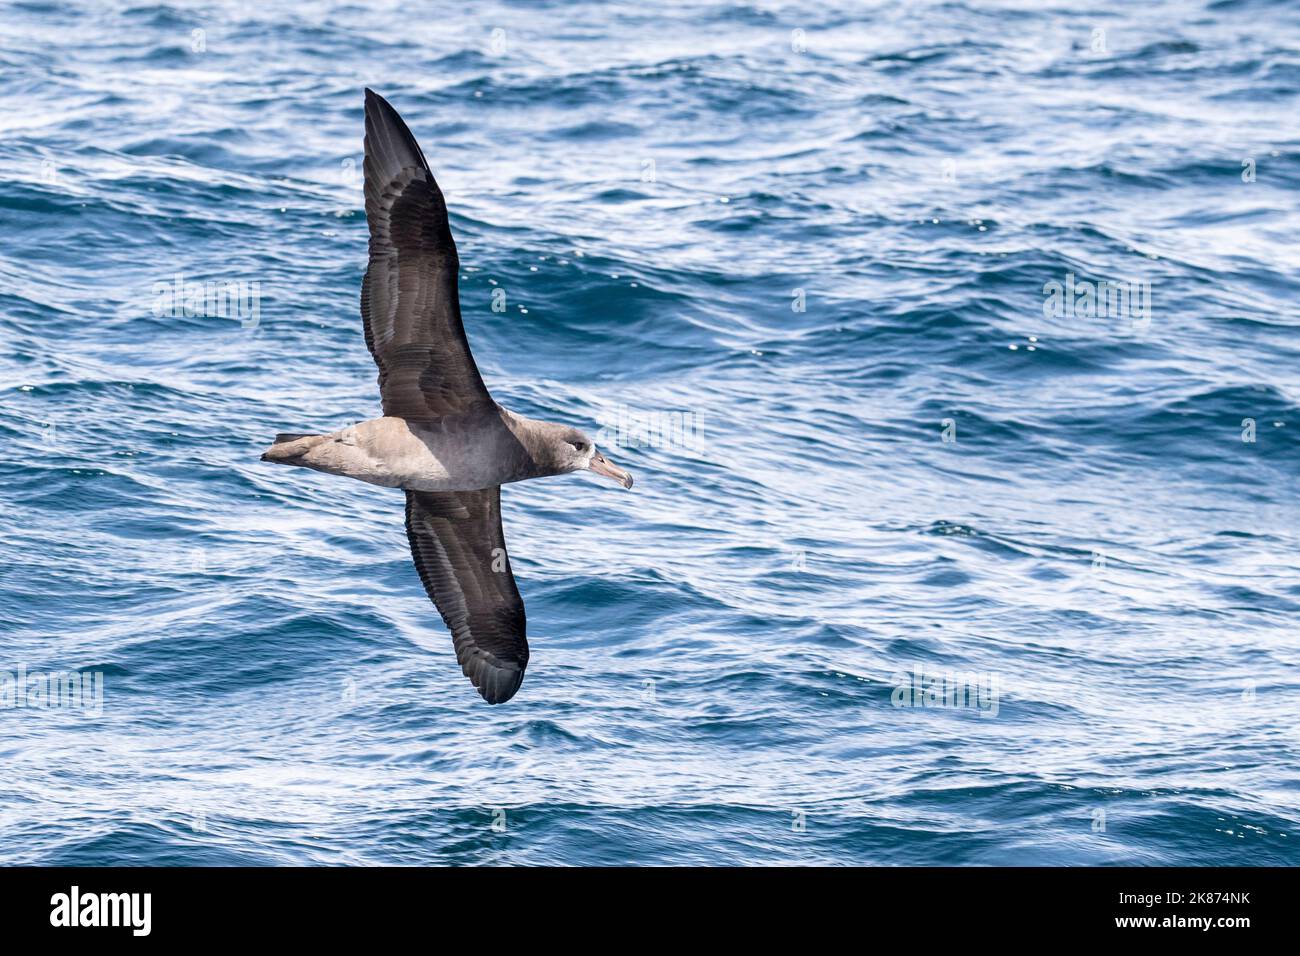 Un albatros à pieds noirs (Phoebastria nigripes) adulte en vol en mer, baie de Monterey, Californie, États-Unis d'Amérique, Amérique du Nord Banque D'Images